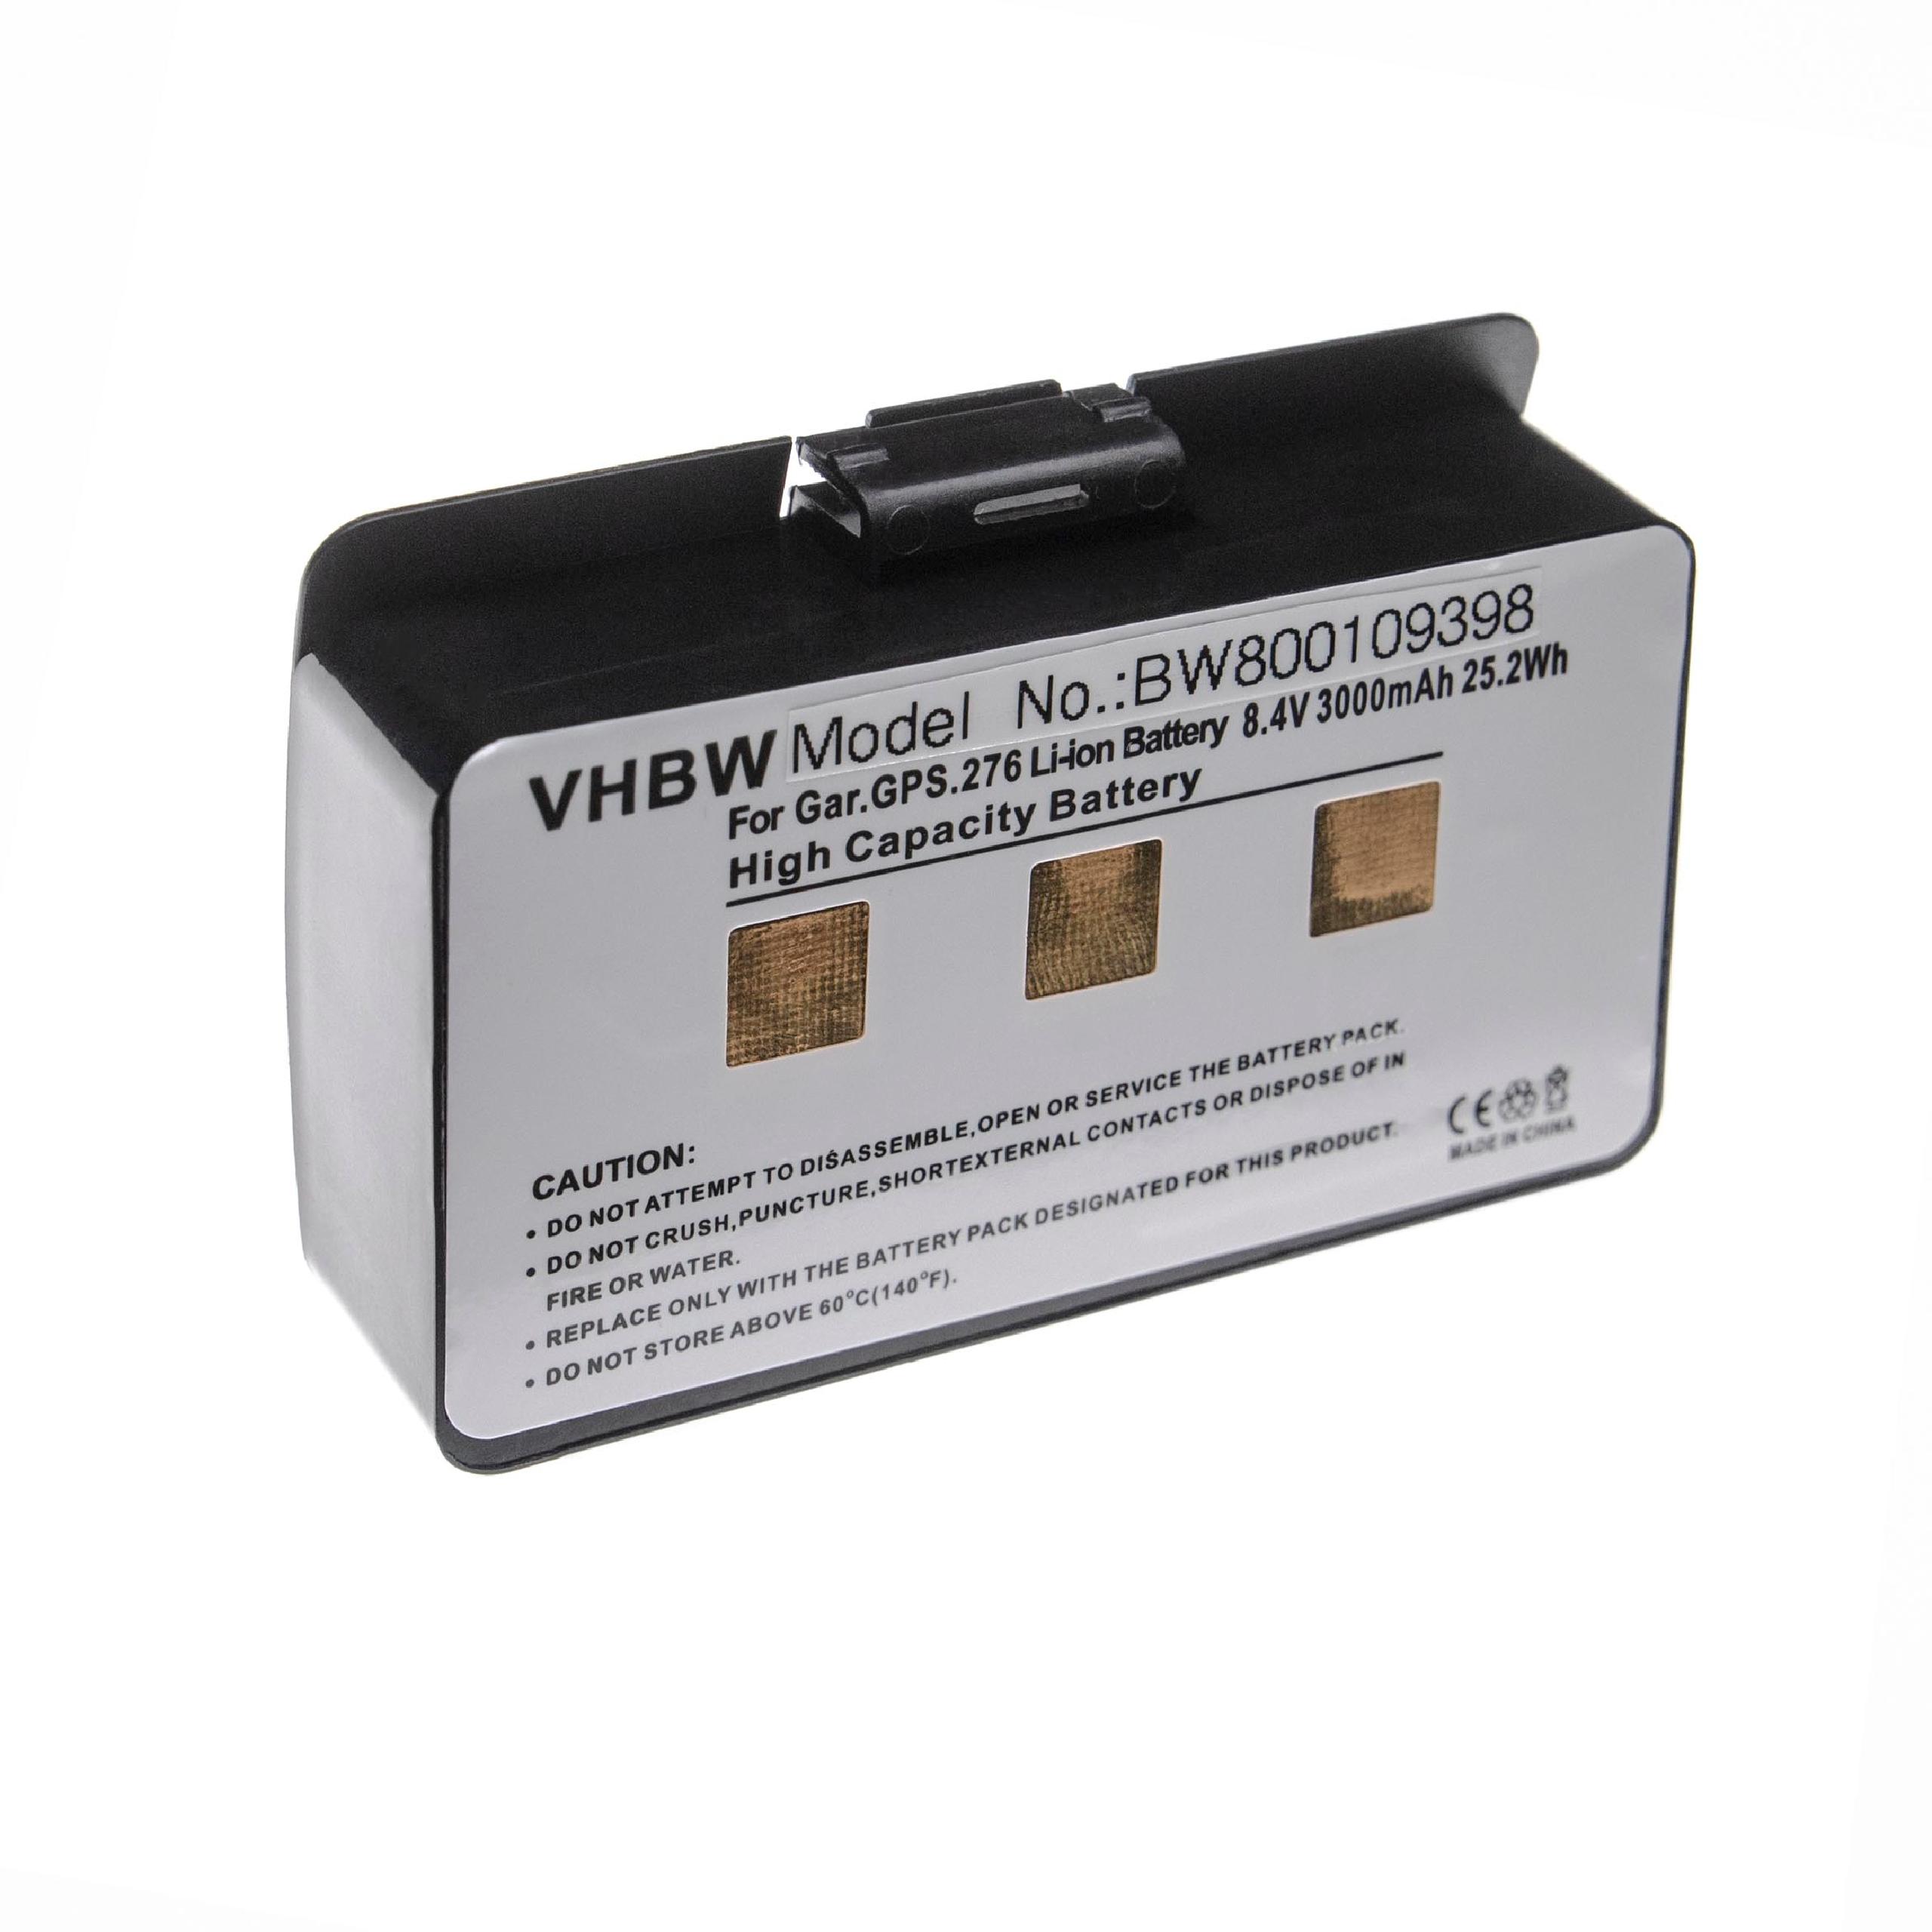 Batterie remplace Garmin 010-10517-00, 010-10517-01, 01070800001 pour navigation GPS - 3000mAh 7,4V Li-ion